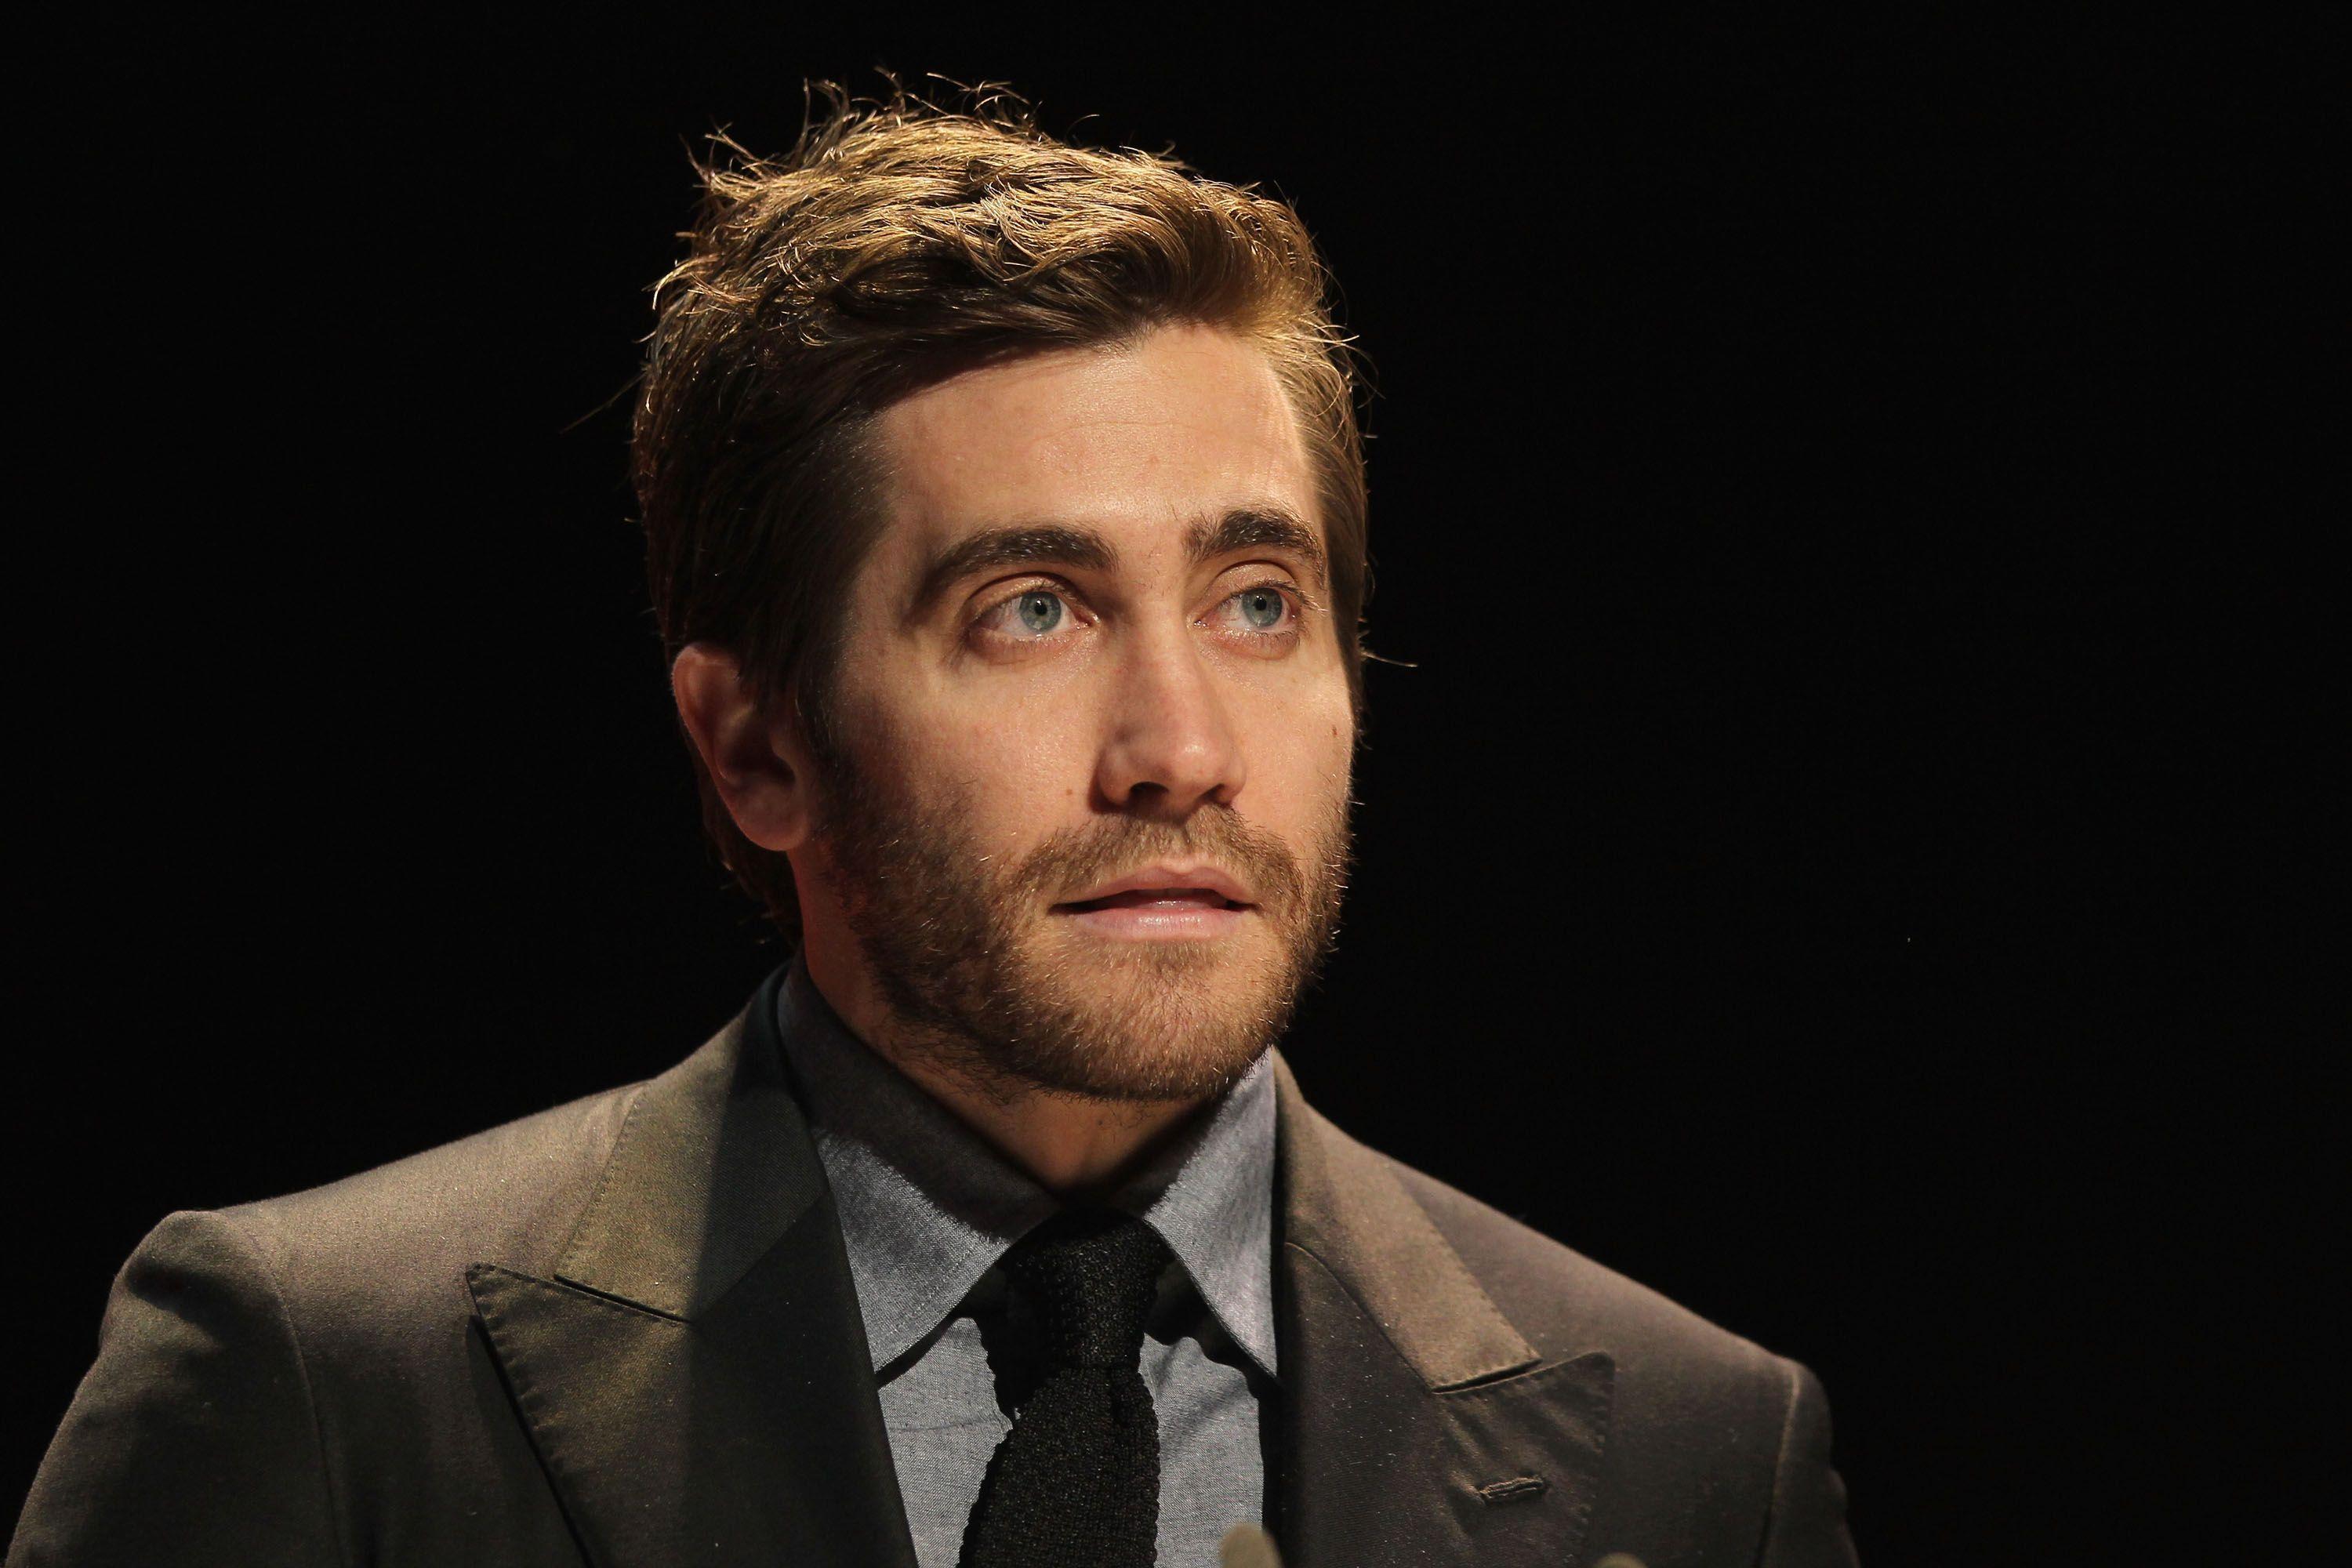 Wallpaper pose actor Jake Gyllenhaal images for desktop section мужчины   download